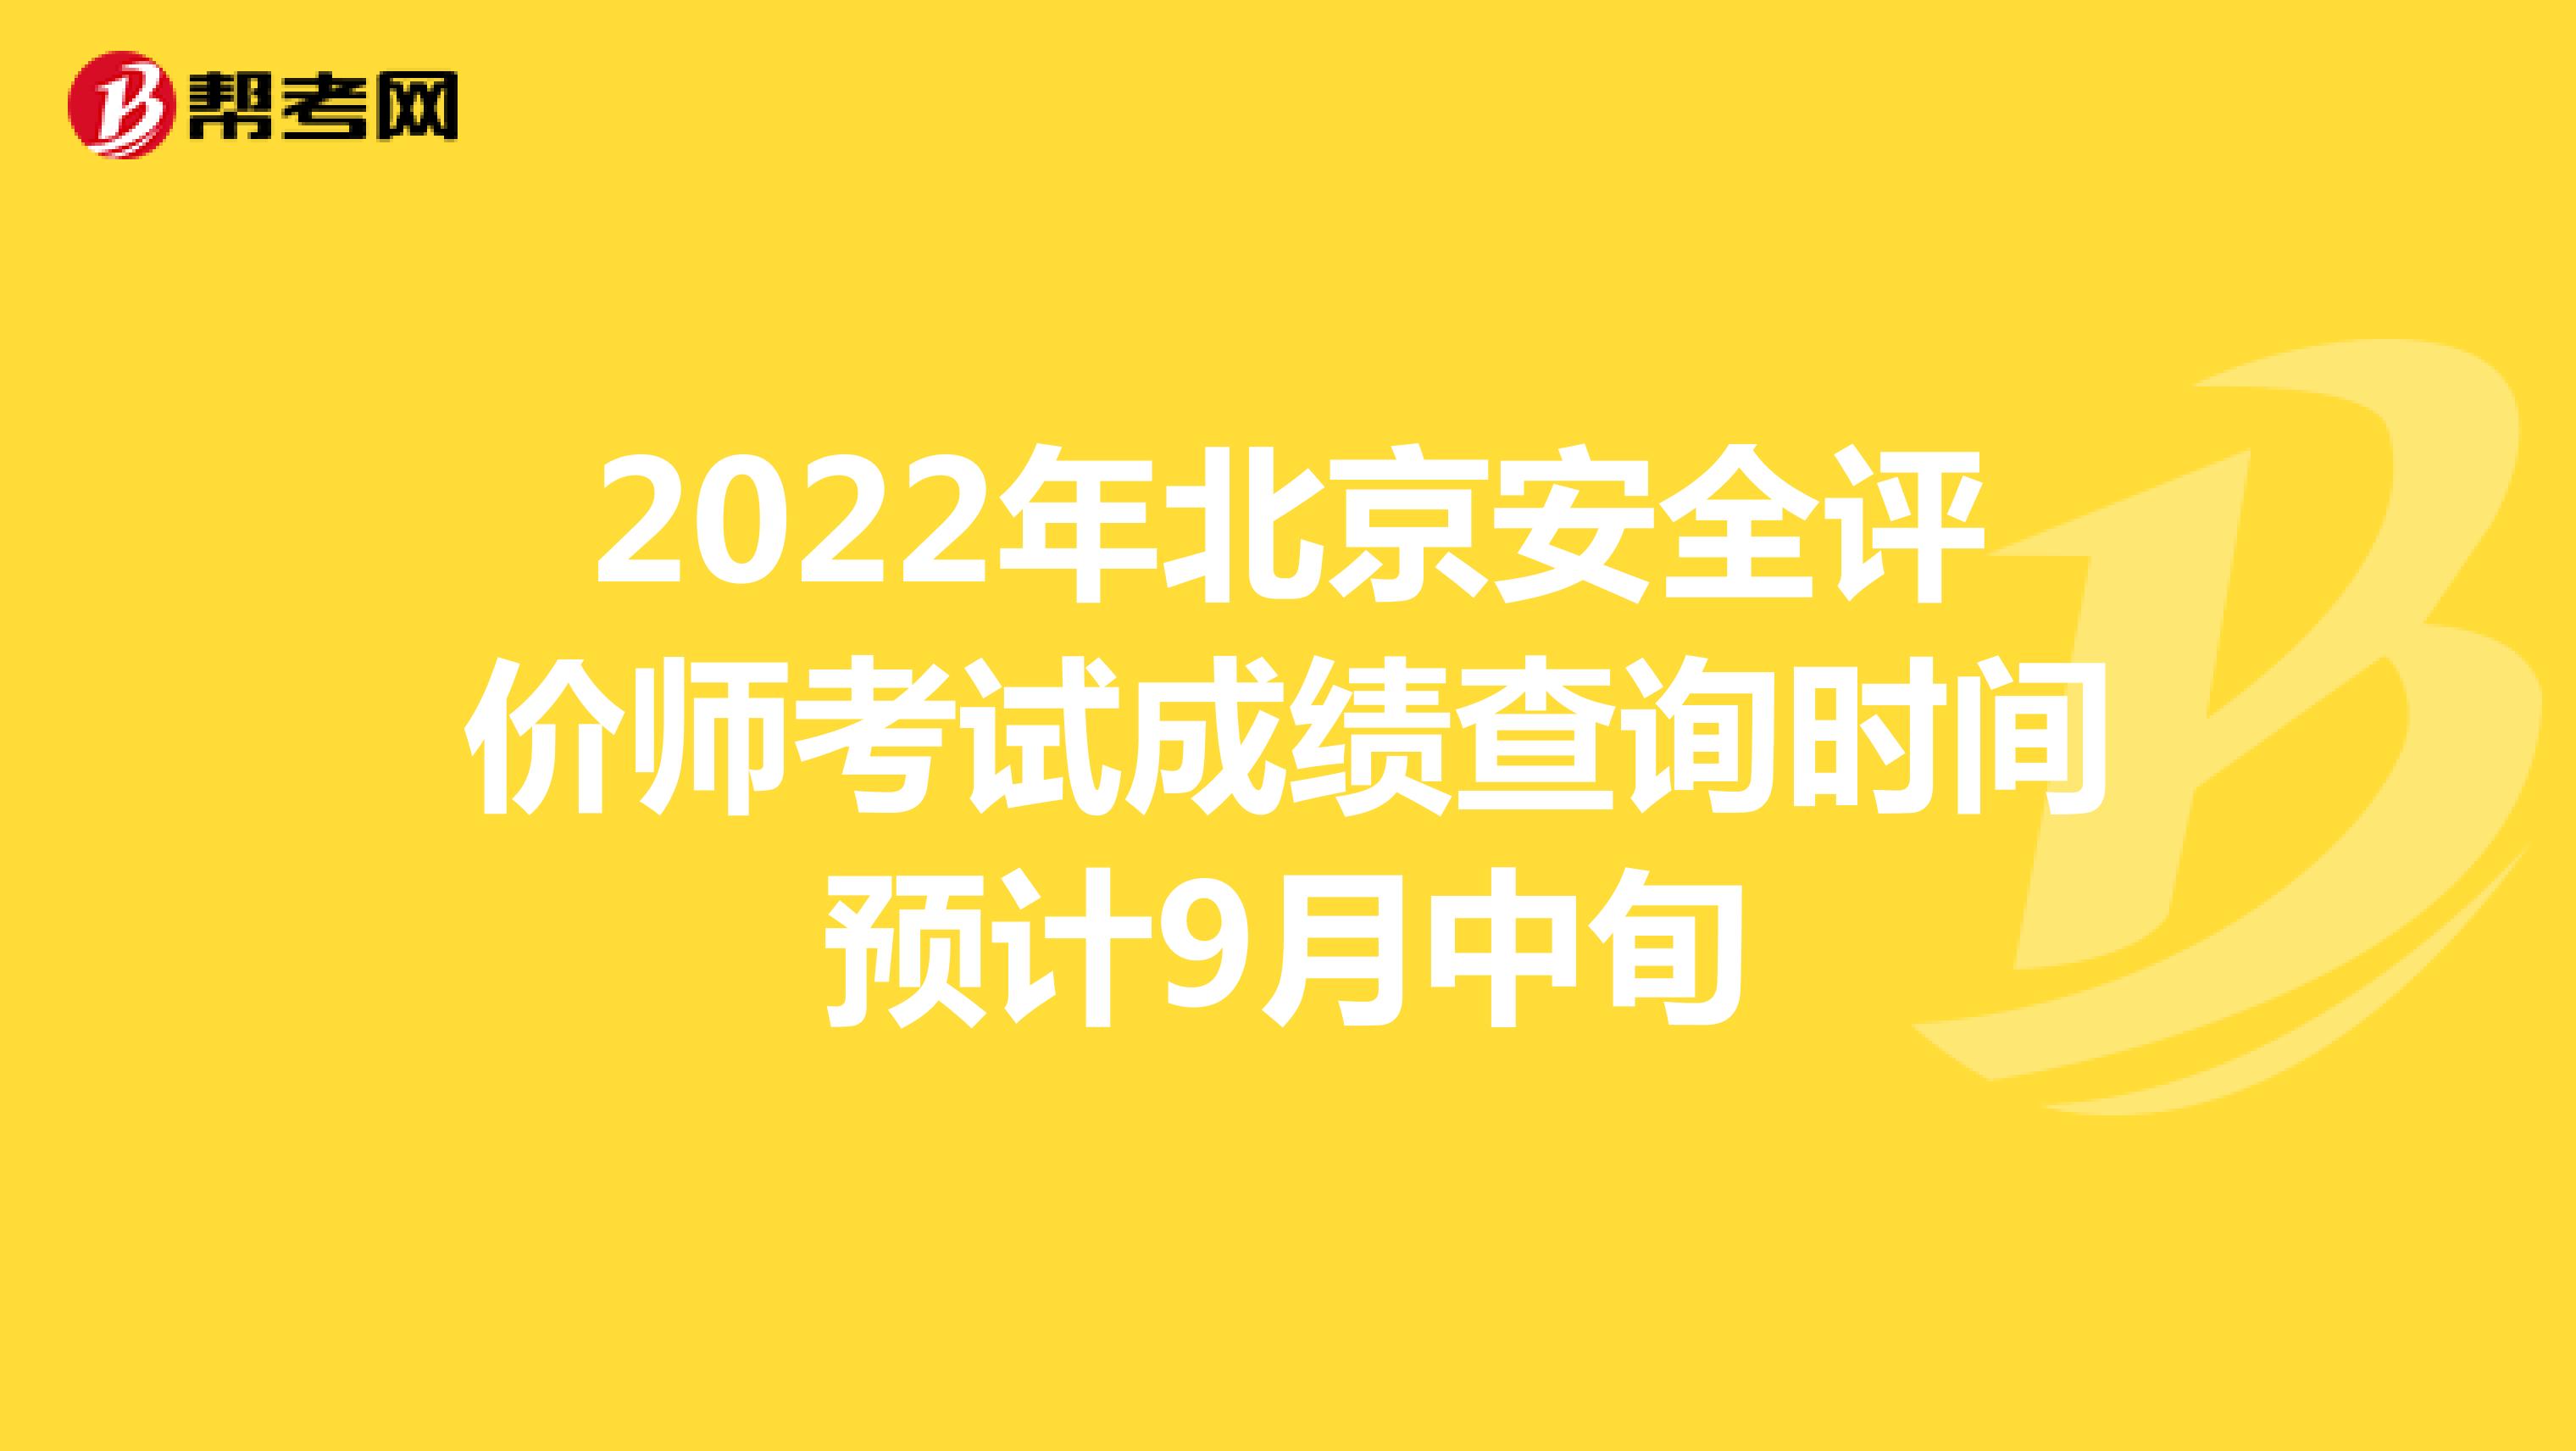 2022年北京安全评价师考试成绩查询时间预计9月中旬